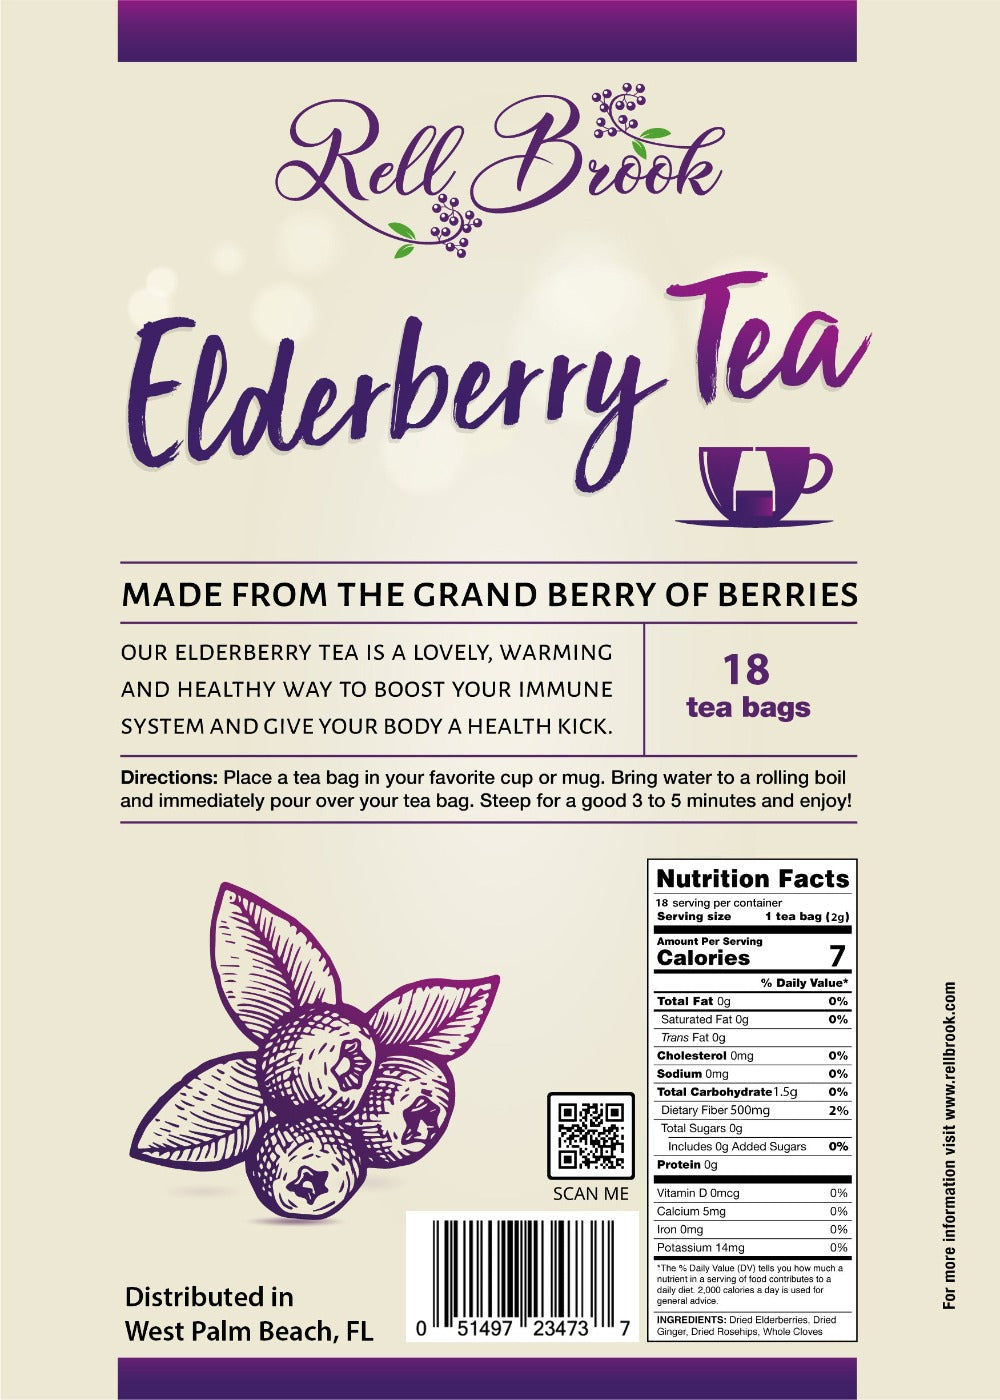 Elderberry Tea Bag facts